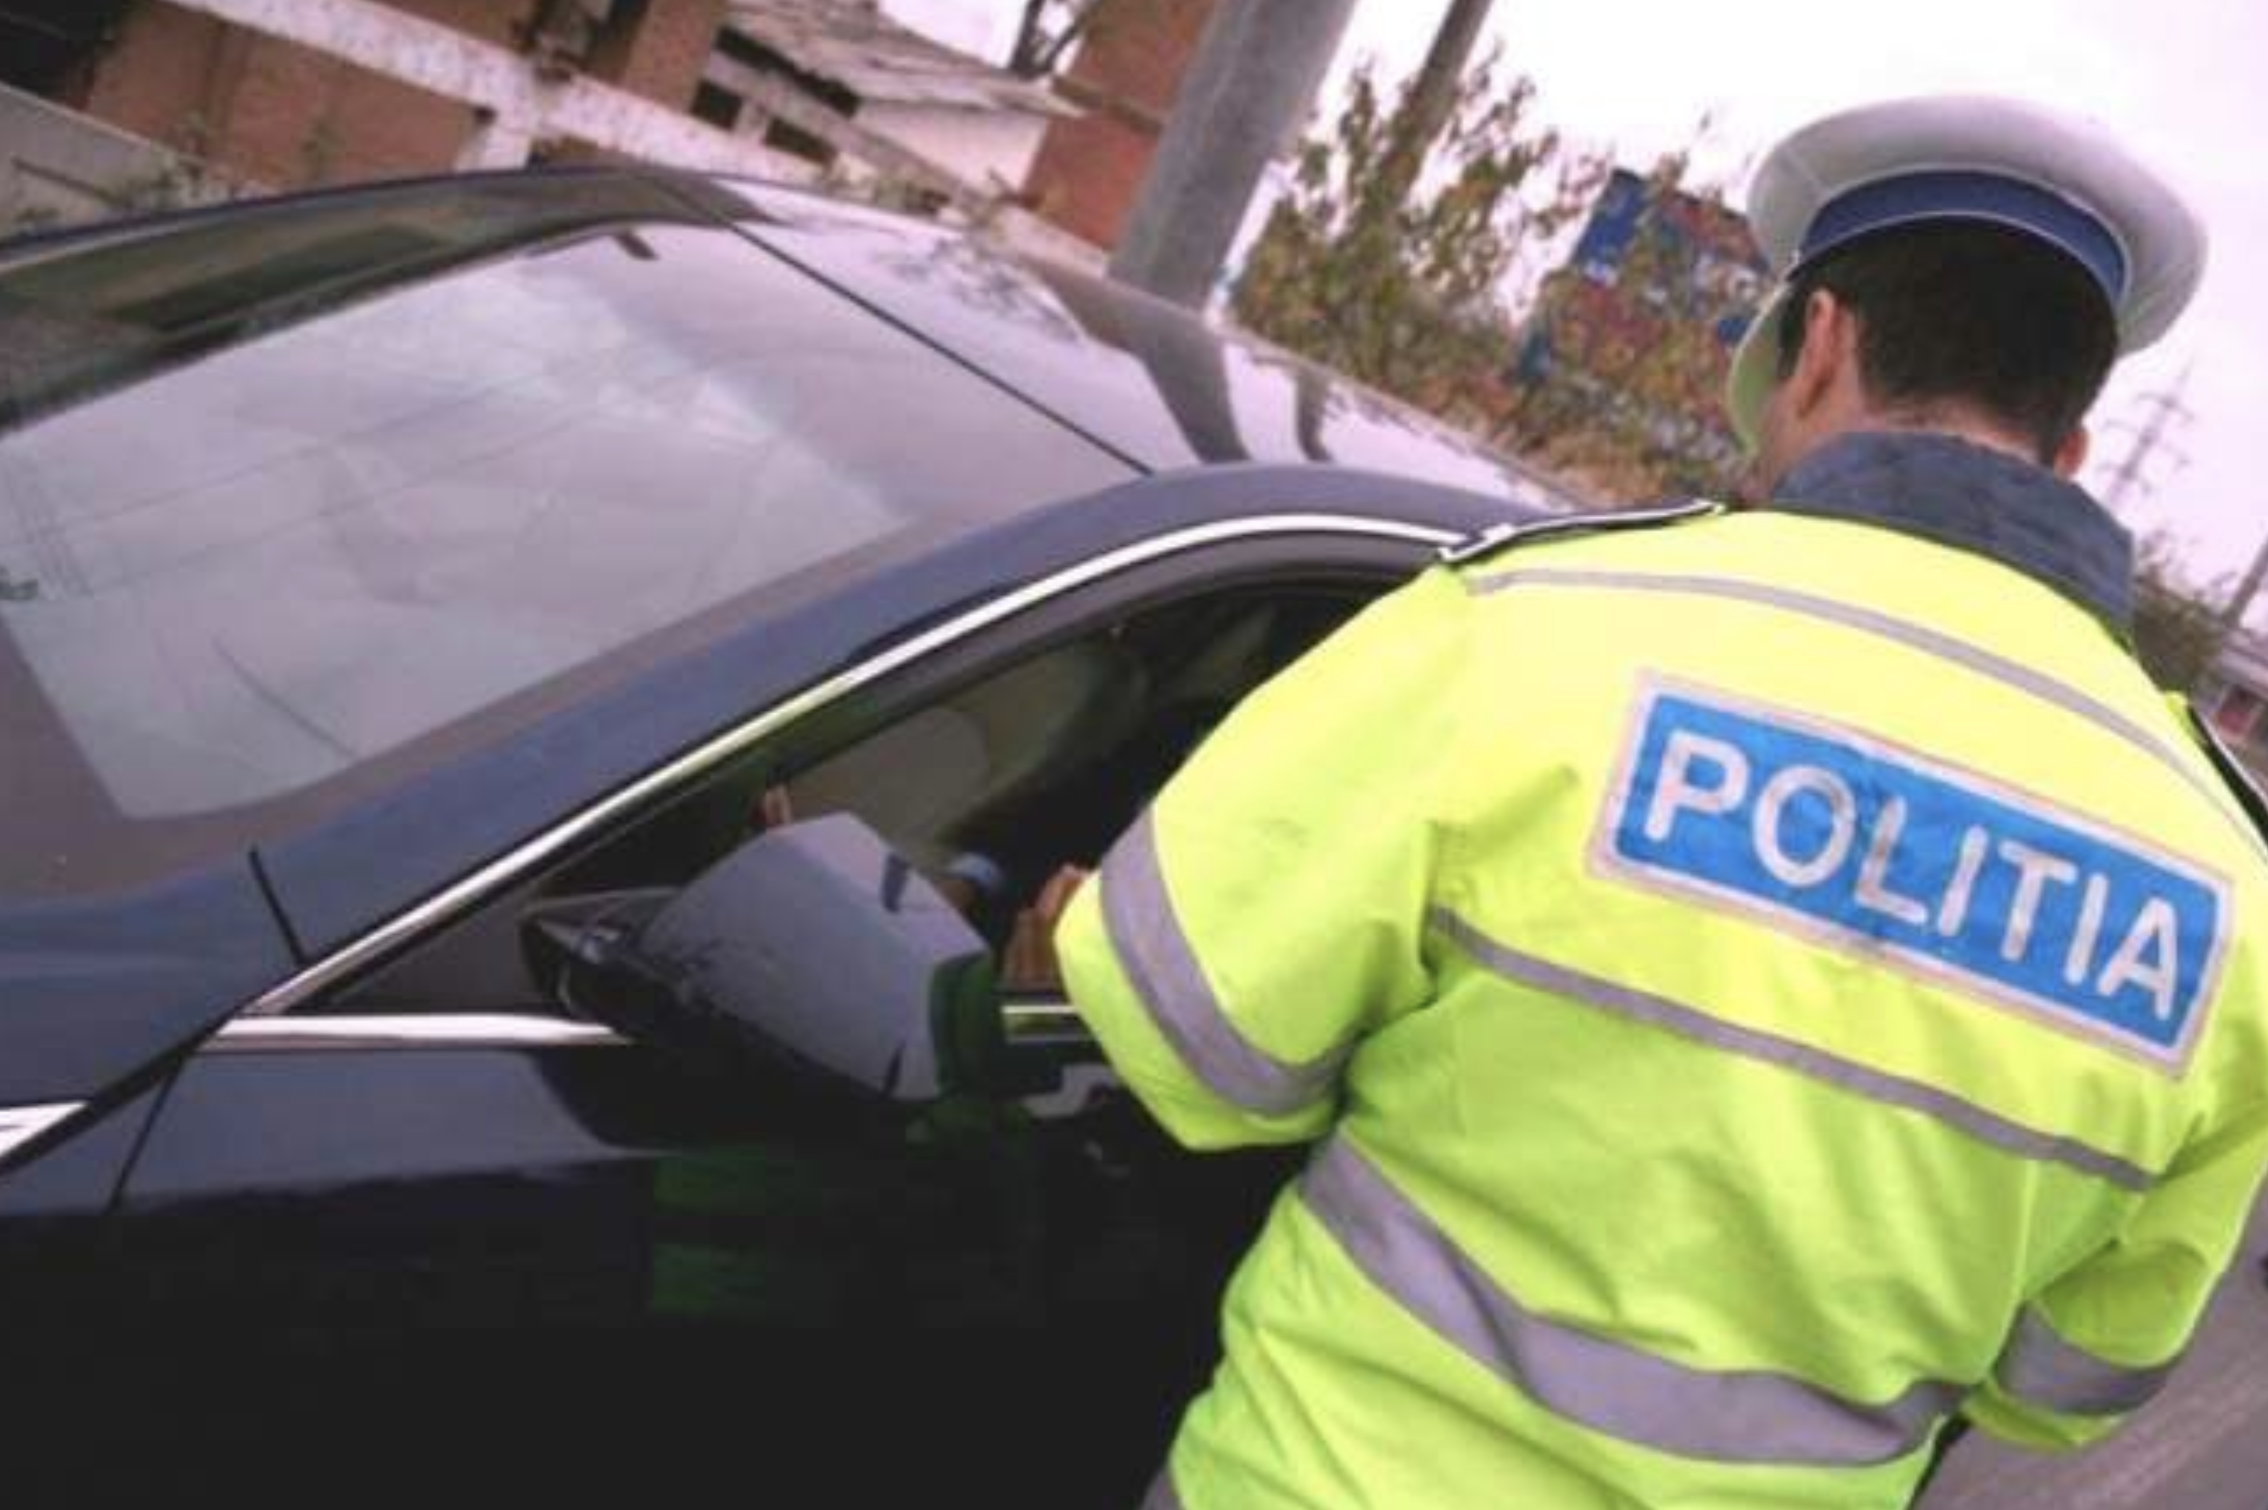 Poliţia Română are un avertisment ferm pentru şoferi. Pentru ce fapte vor fi taxaţi